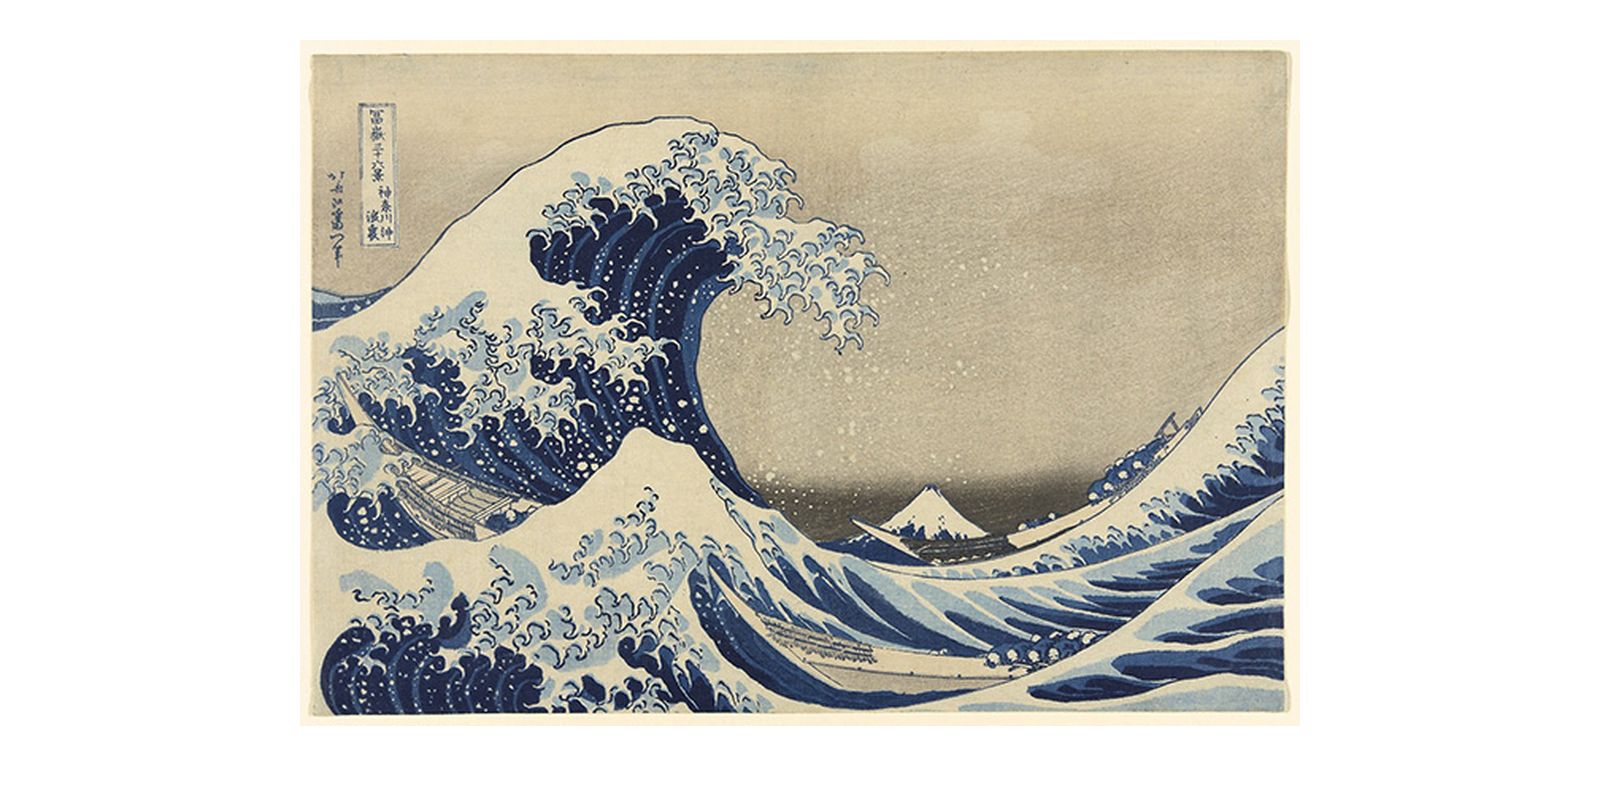 Έργο του Katsushika Hokusai (1760-1850), της περιόδου γύρω στο 1830